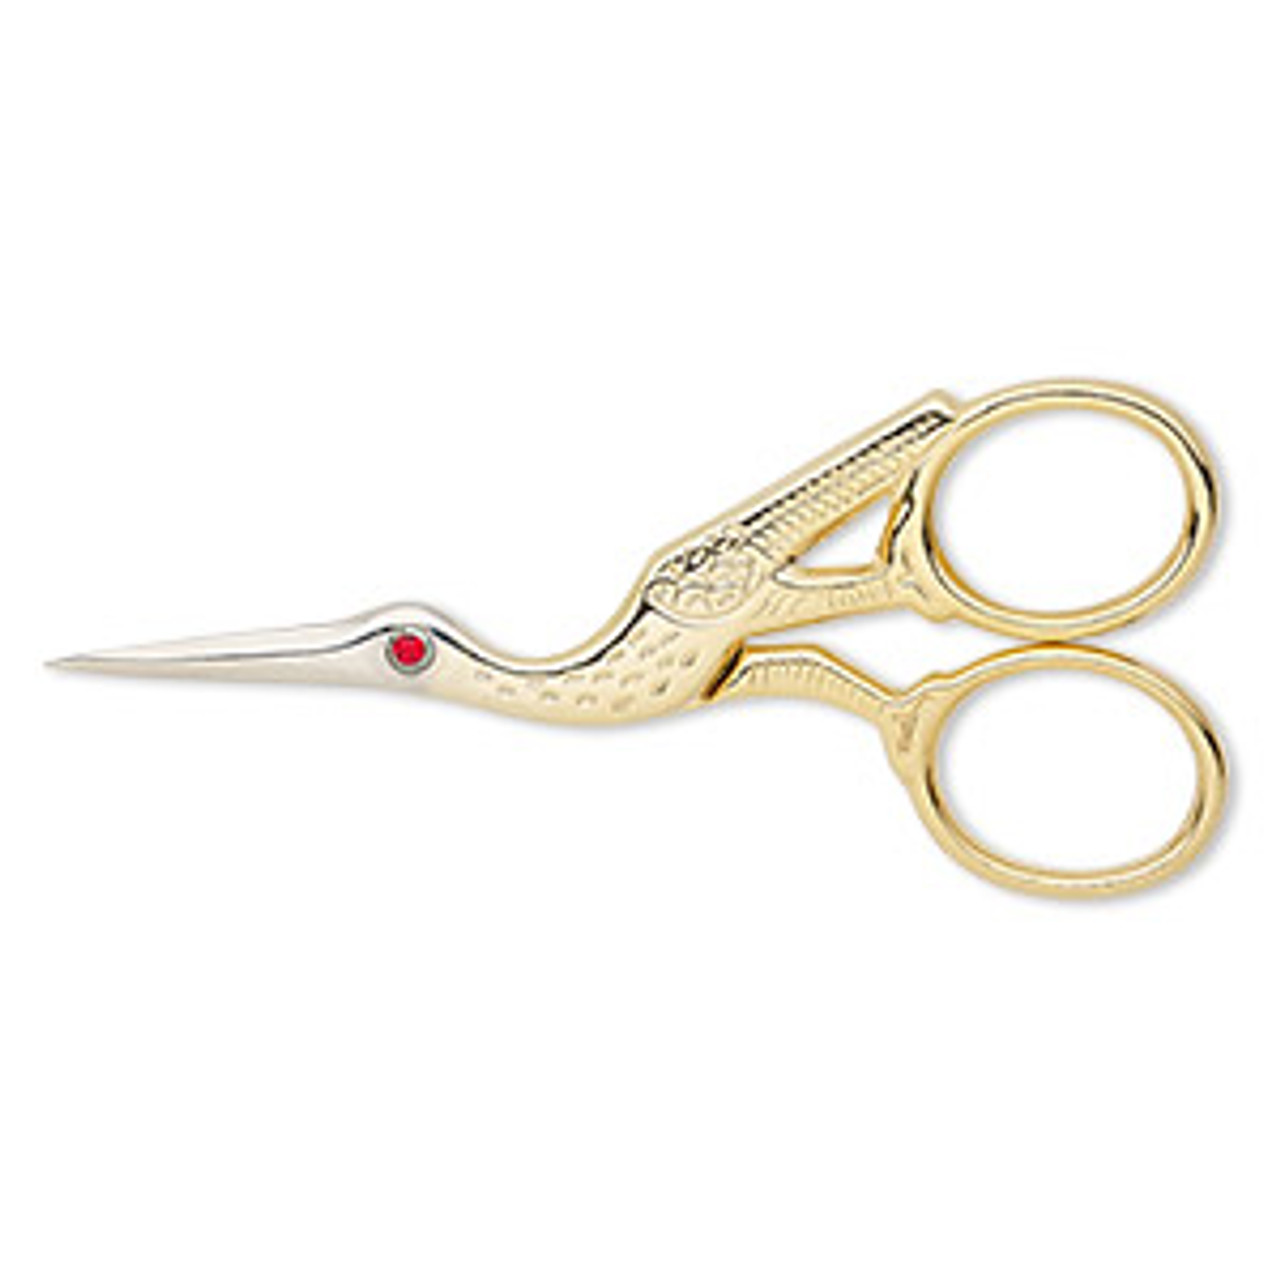 Ruby Red Swarovski Crystal Stork Scissors